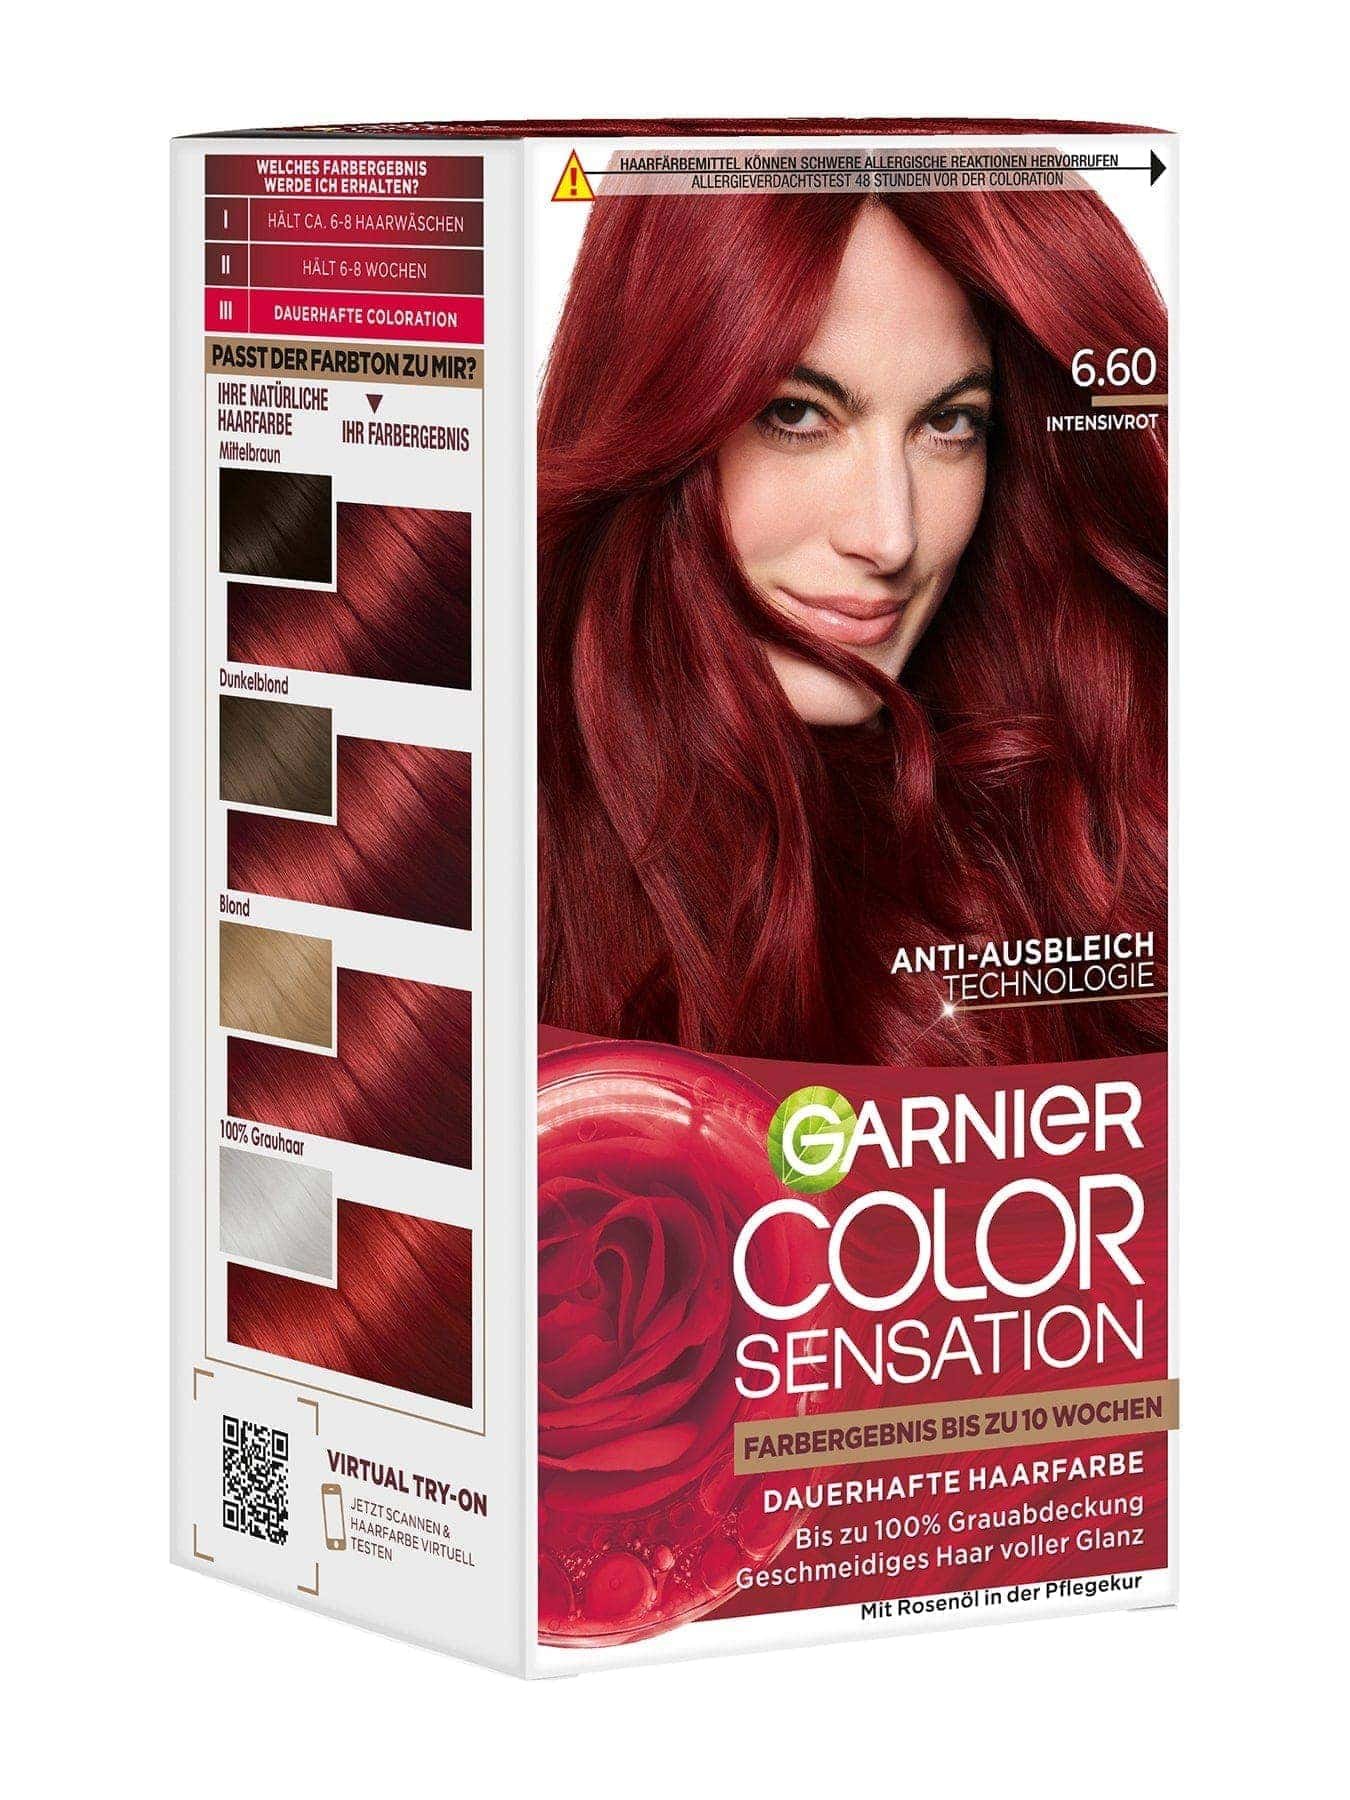 Color Sensation dauerhafte Haarfarbe 6.60 Intensivrot Produktbild